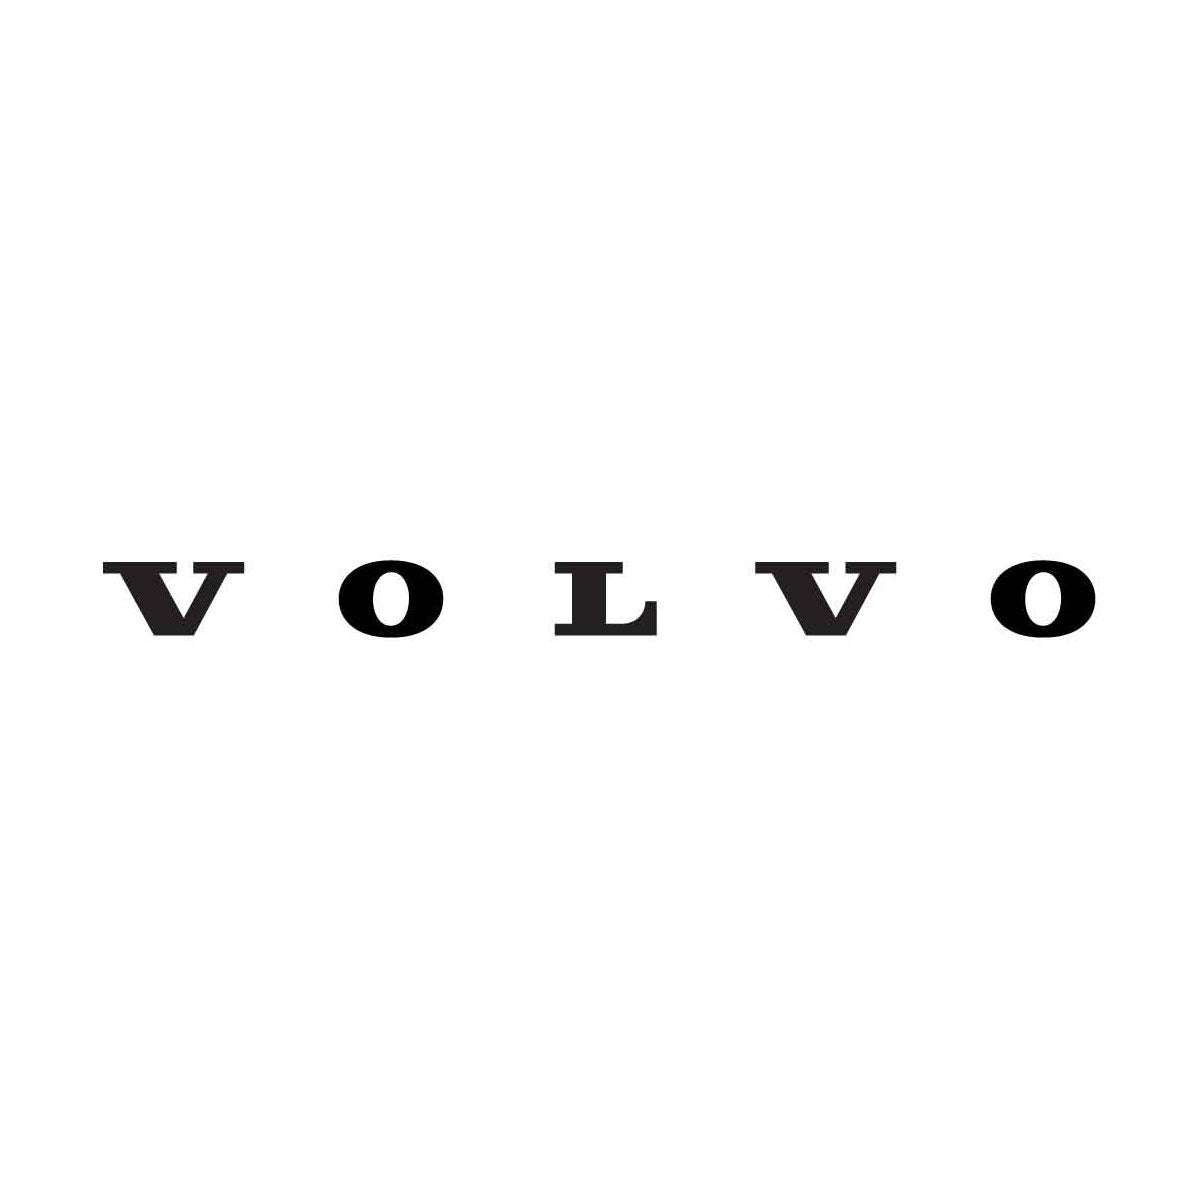 Artikel von Volvo